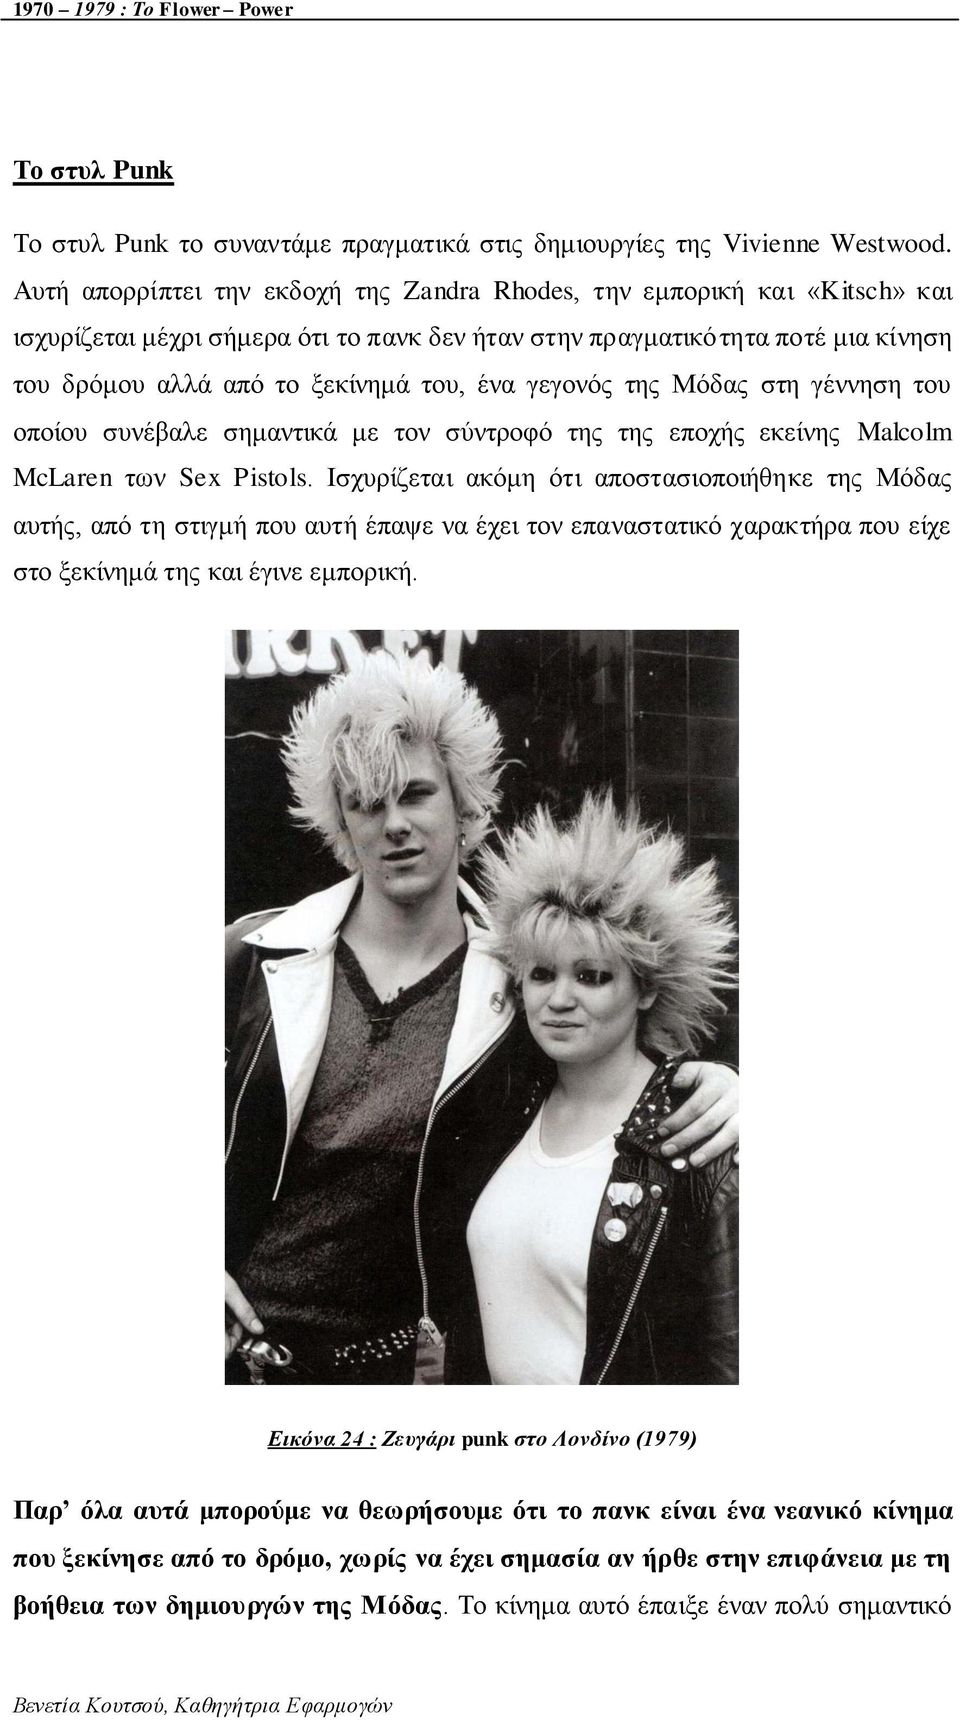 γεγνλόο ηεο Μόδαο ζηε γέλλεζε ηνπ νπνίνπ ζπλέβαιε ζεκαληηθά κε ηνλ ζύληξνθό ηεο ηεο επνρήο εθείλεο Malcolm McLaren ησλ Sex Pistols.